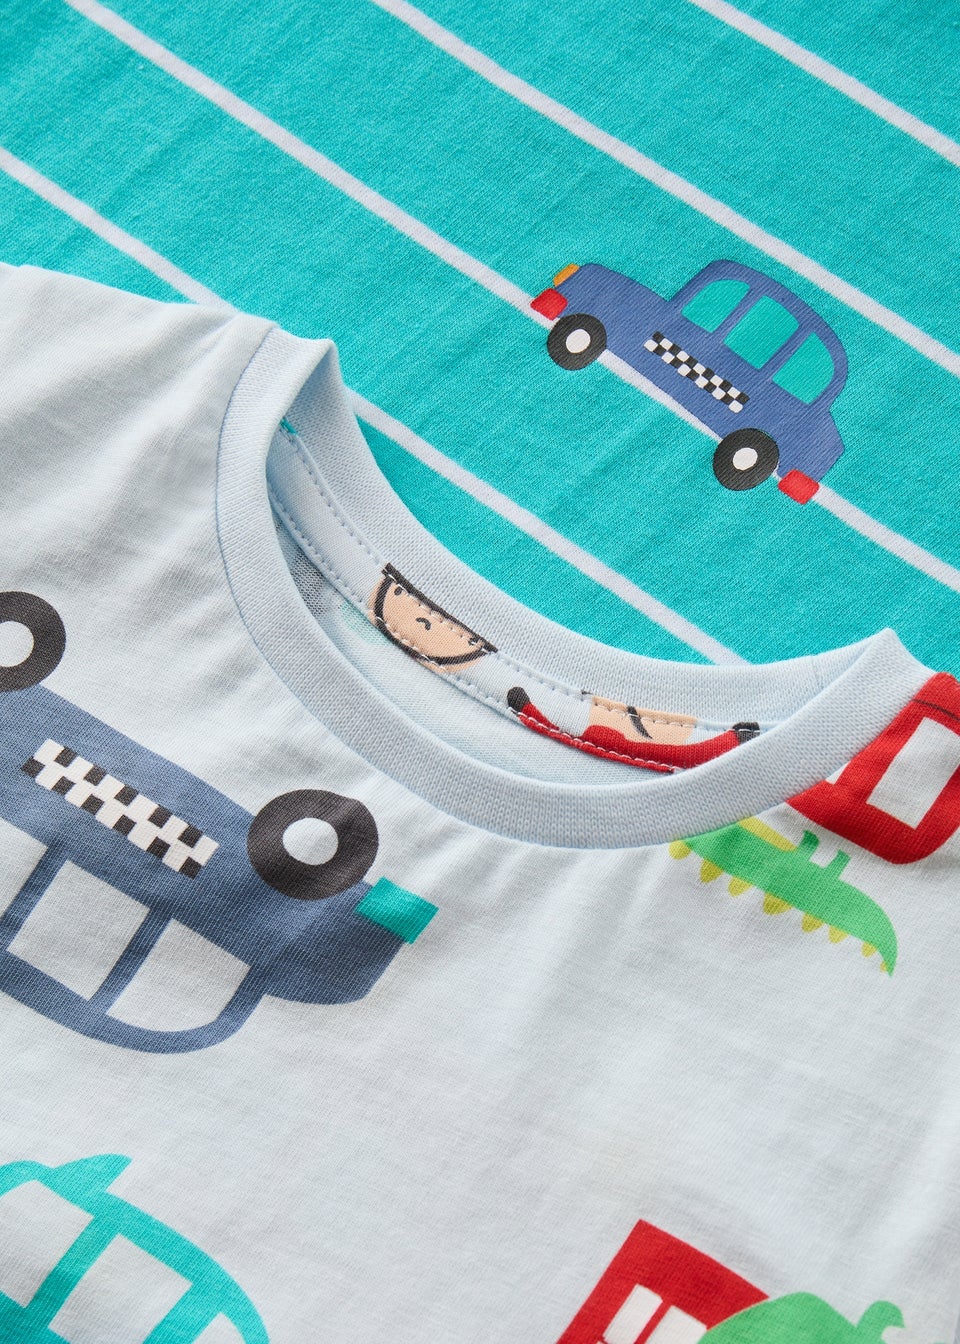 Boys 3 Pack Bus Print T-Shirt & Shorts Pyjama Set (9mths- 5yrs)